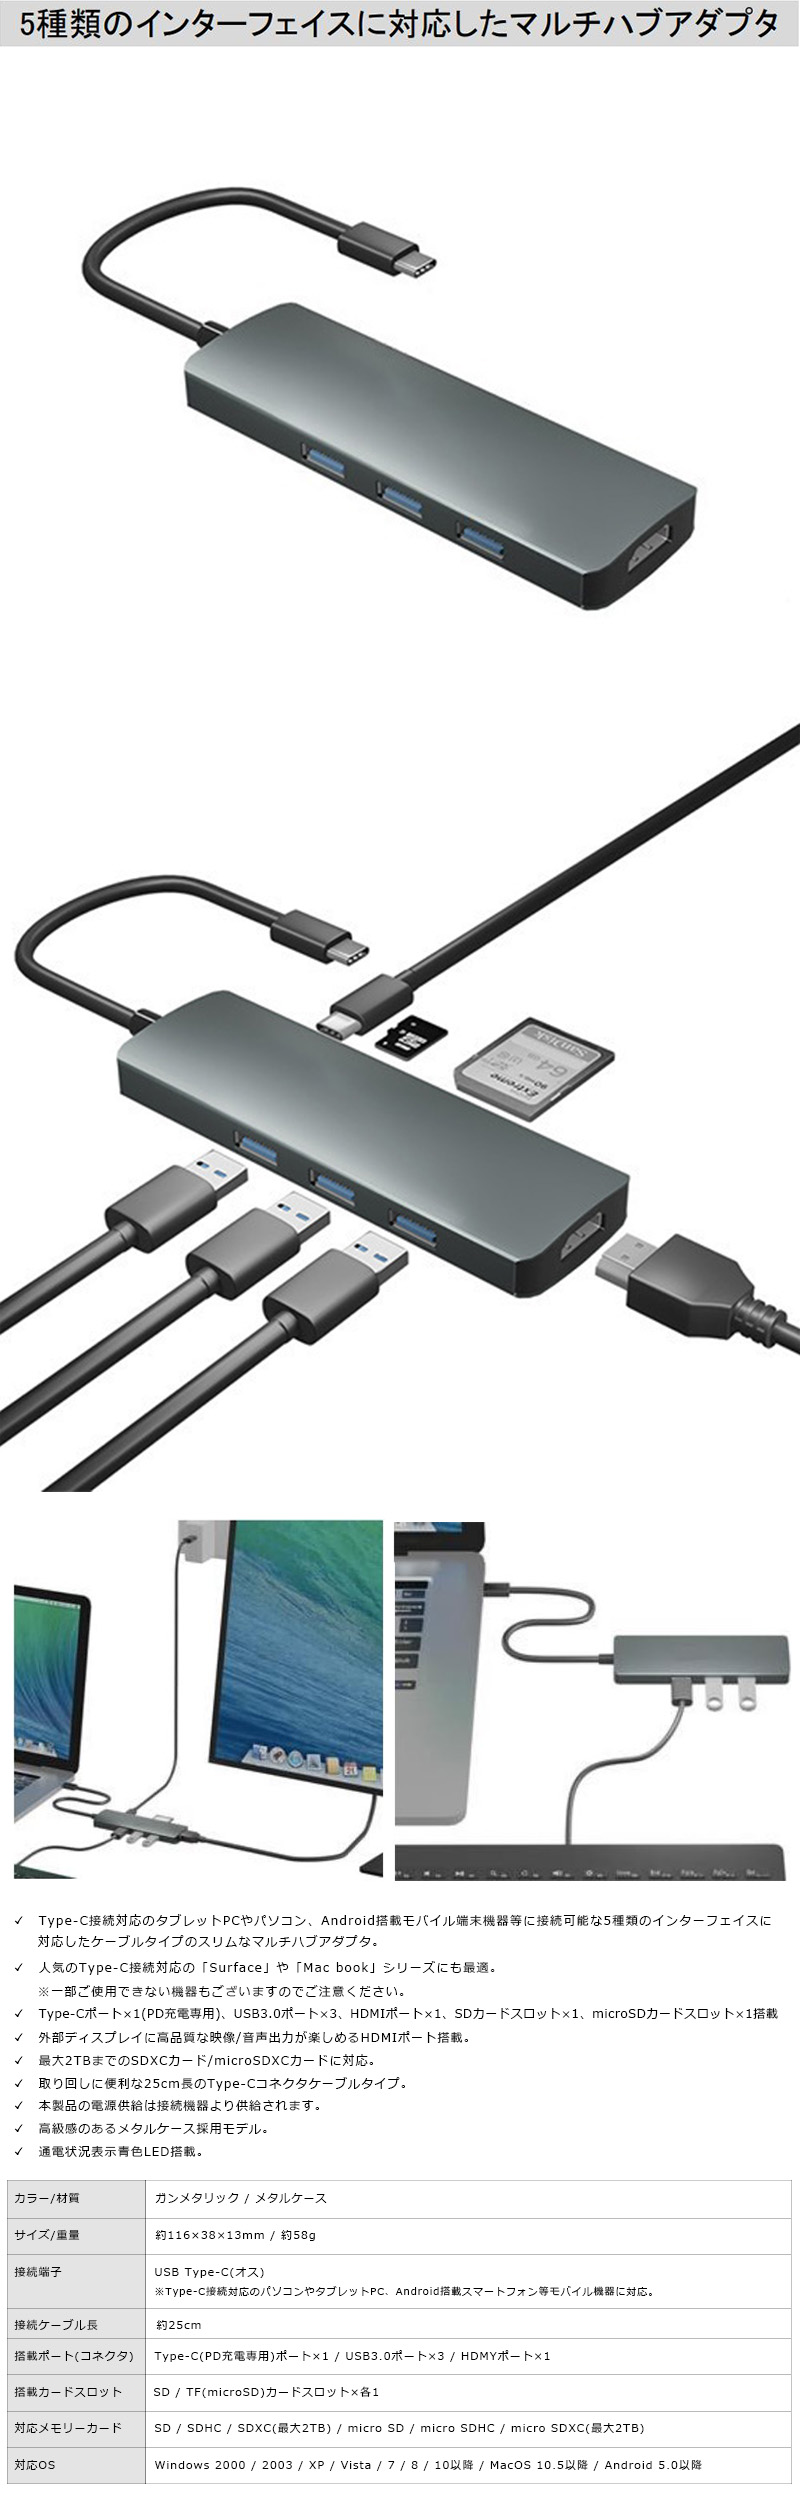 Type-Cポート搭載 Surface＆MacBookシリーズ対応 USBドッキングハブのLP一枚画像。5種類のインターフェイスに対応したマルチハブアダプタ。Type-C接続対応のタブレットPCやパソコン、Android搭載モバイル端末機器等に接続可能な5種類のインターフェイスに対応したケーブルタイプのスリムなマルチハブアダプタ。人気のType-C接続対応の「Surface」や「Mac book」シリーズにも最適。※一部ご使用できない機器もございますのでご注意ください。Type-Cポート×1(PD充電専用)、USB3.0ポート×3、HDMIポート×1、SDカードスロット×1、microSDカードスロット×1搭載。外部ディスプレイに高品質な映像/音声出力が楽しめるHDMIポート搭載。最大2TBまでのSDXCカード/microSDXCカードに対応。取り回しに便利な25cm長のType-Cコネクタケーブルタイプ。本製品の電源供給は接続機器より供給されます。高級感のあるメタルケース採用モデル。通電状況表示青色LED搭載。カラー/材質：ガンメタリック/メタルケース。サイズ/重量：約116×38×13mm/約58g。接続端子：USB Type-C(オス) ※Type-C接続対応のパソコンやタブレットPC、Android搭載スマートフォン等モバイル機器に対応。接続ケーブル長：約25cm。搭載ポート(コネクタ)：Type-C(PD充電専用)ポート×1 / USB3.0ポート×3 / HDMYポート×1。搭載カードスロット：SD / TF(microSD)カードスロット×各1。対応メモリーカード：SD / SDHC / SDXC(最大2TB) / micro SD / micro SDHC / micro SDXC(最大2TB)。対応OS：Windows 2000/2003/XP/Vista/7/8/10以降/MacOS 10.5以降 